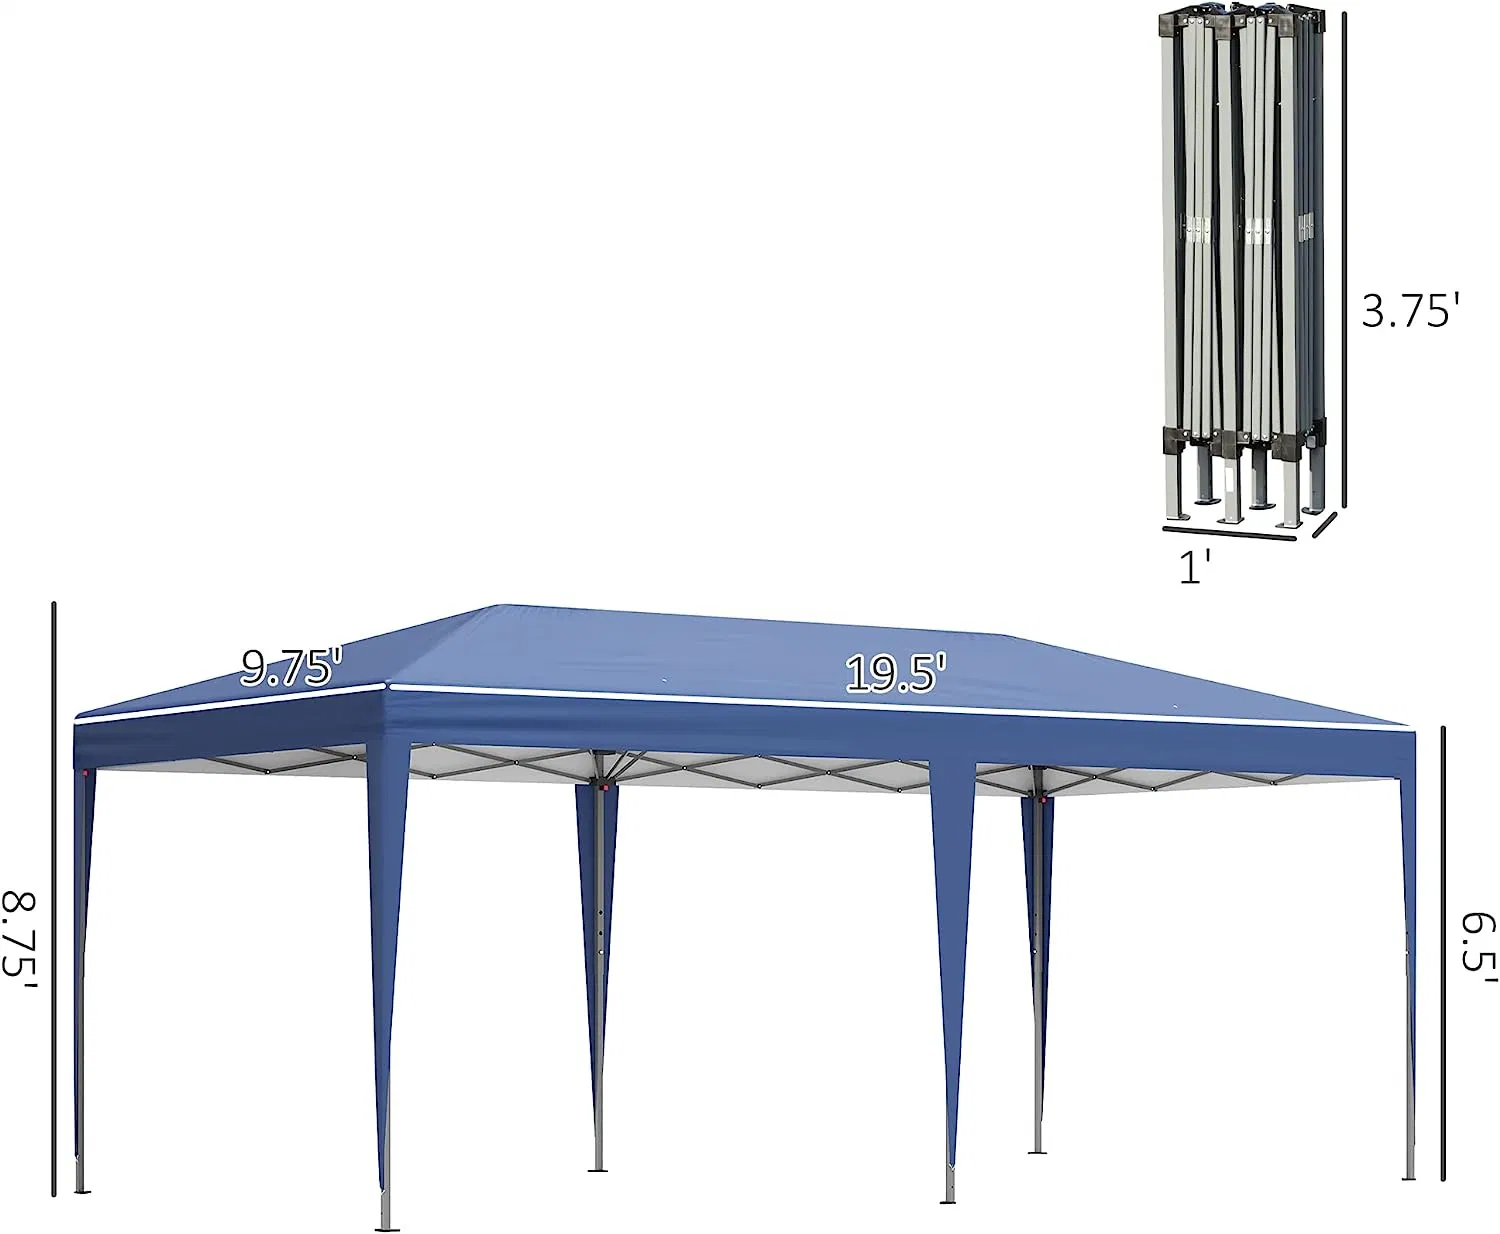 10' X 20' Pop up Canopy Tent, carpas de servicio pesado para fiestas, exterior Gazebo Sun Shade Shelter